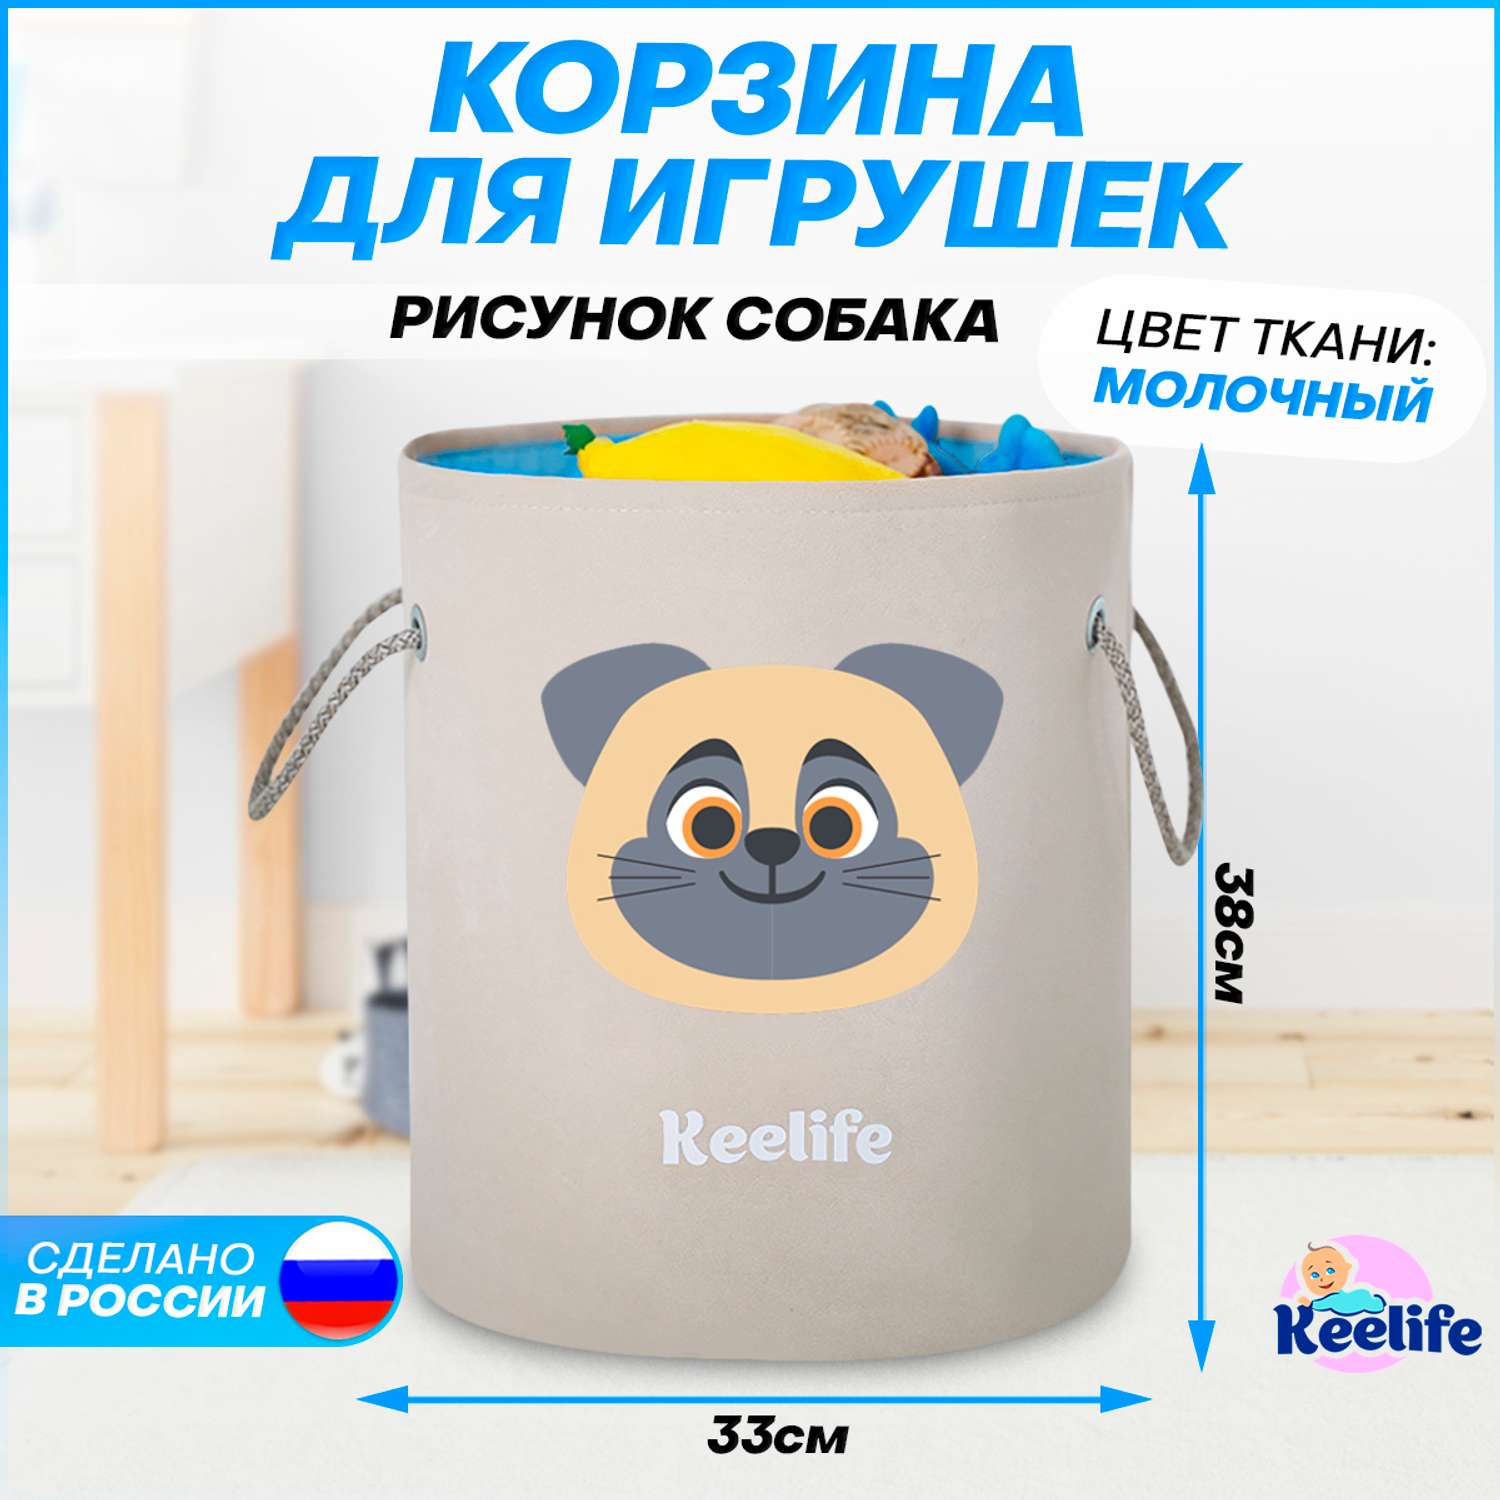 Корзина для игрушек Keelife органайзер для хранения Собака молочный-голубой 33х38см - фото 2